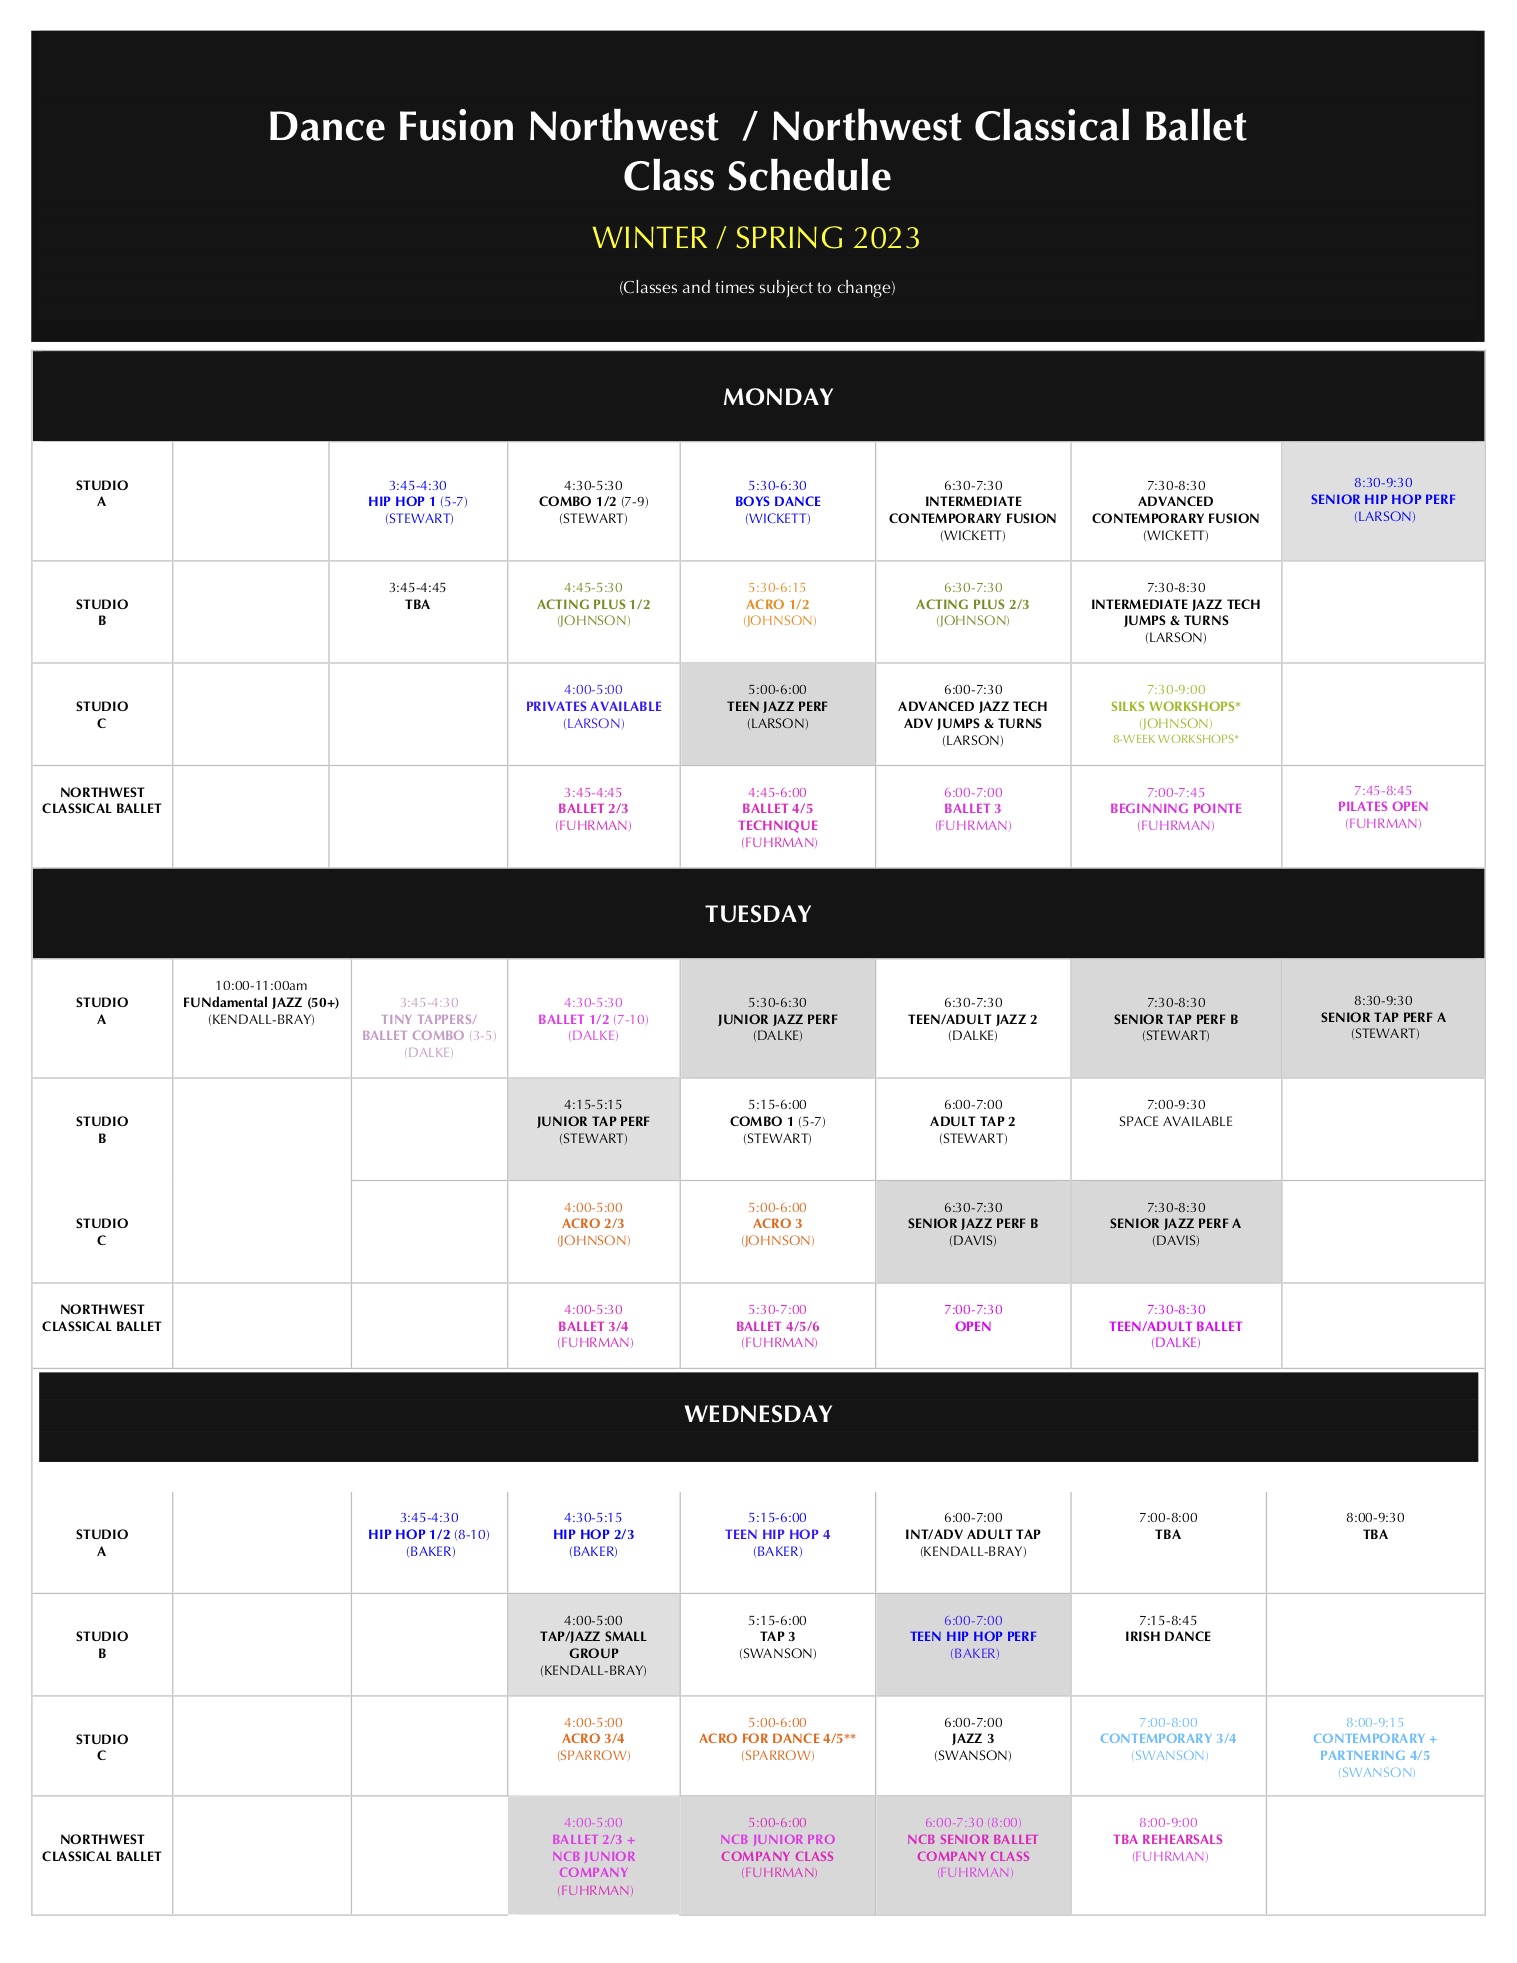 Dance Schedule - Dance Fusion NW Dance Studio